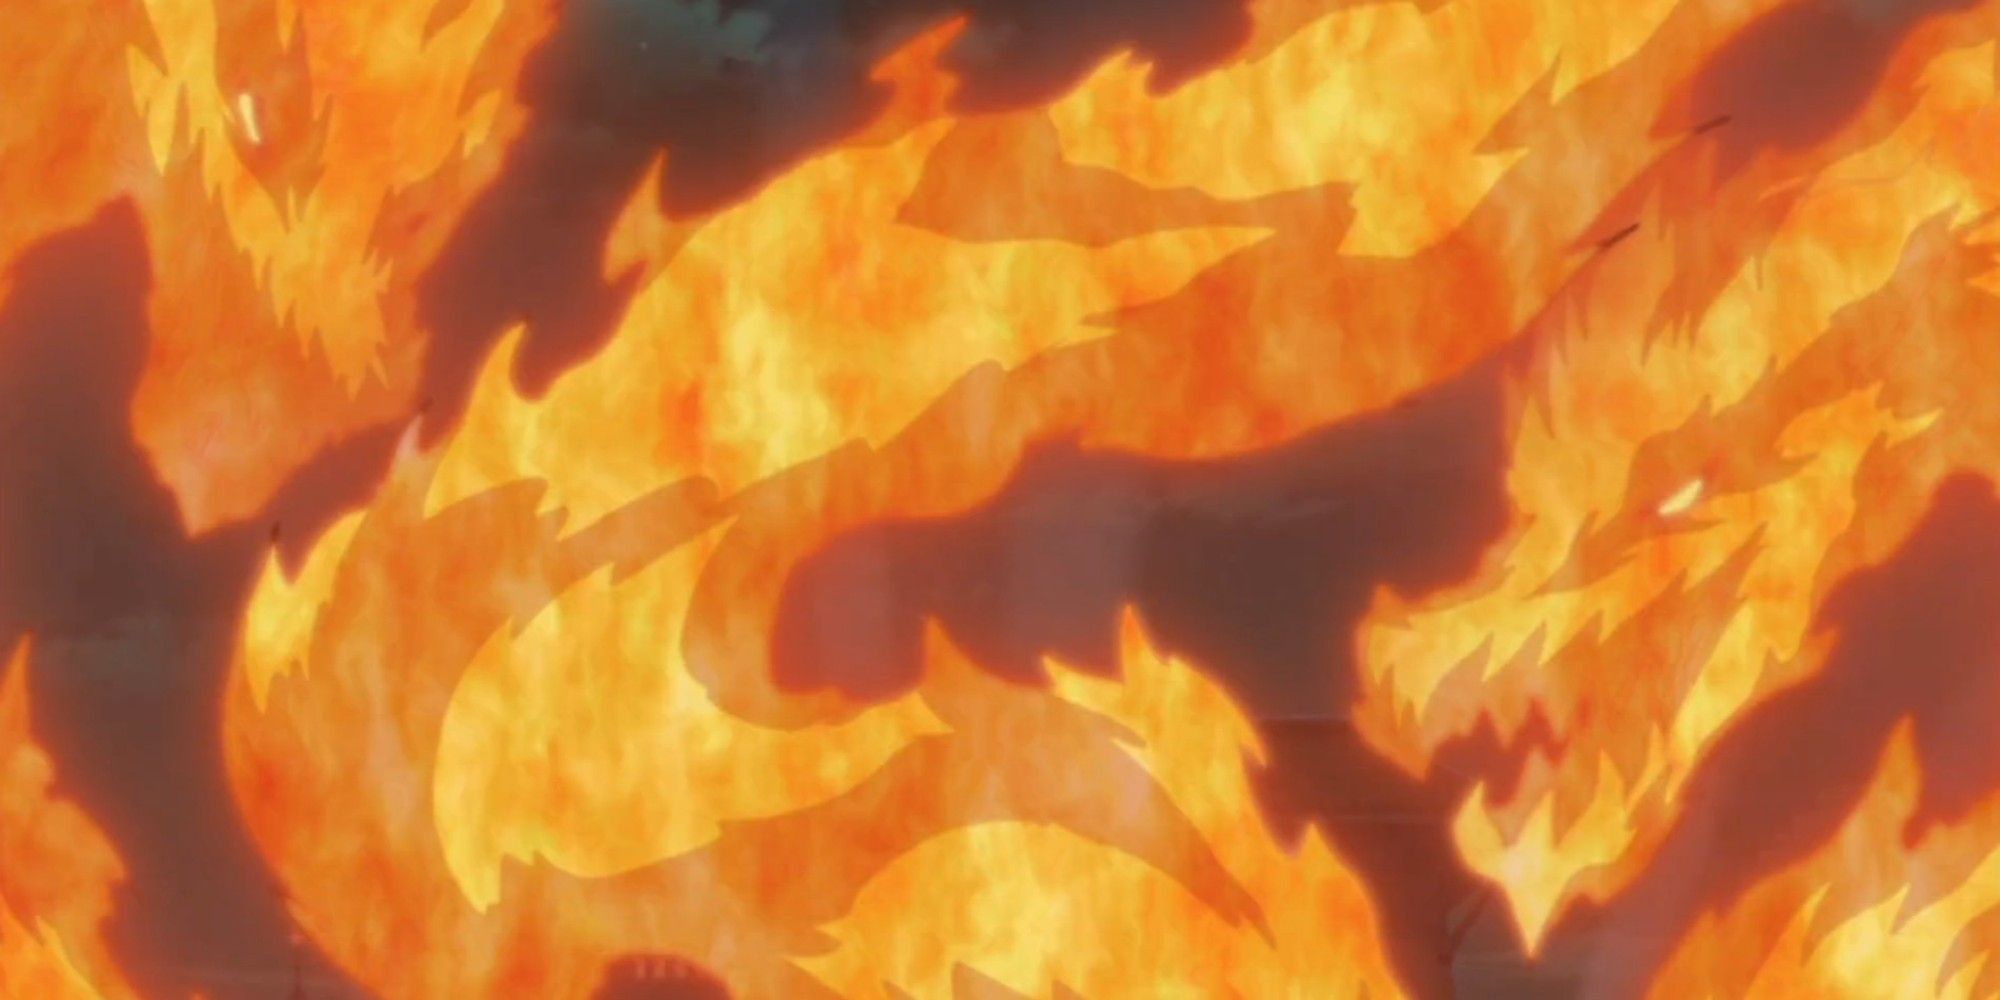 fire style phoenix fire jutsu